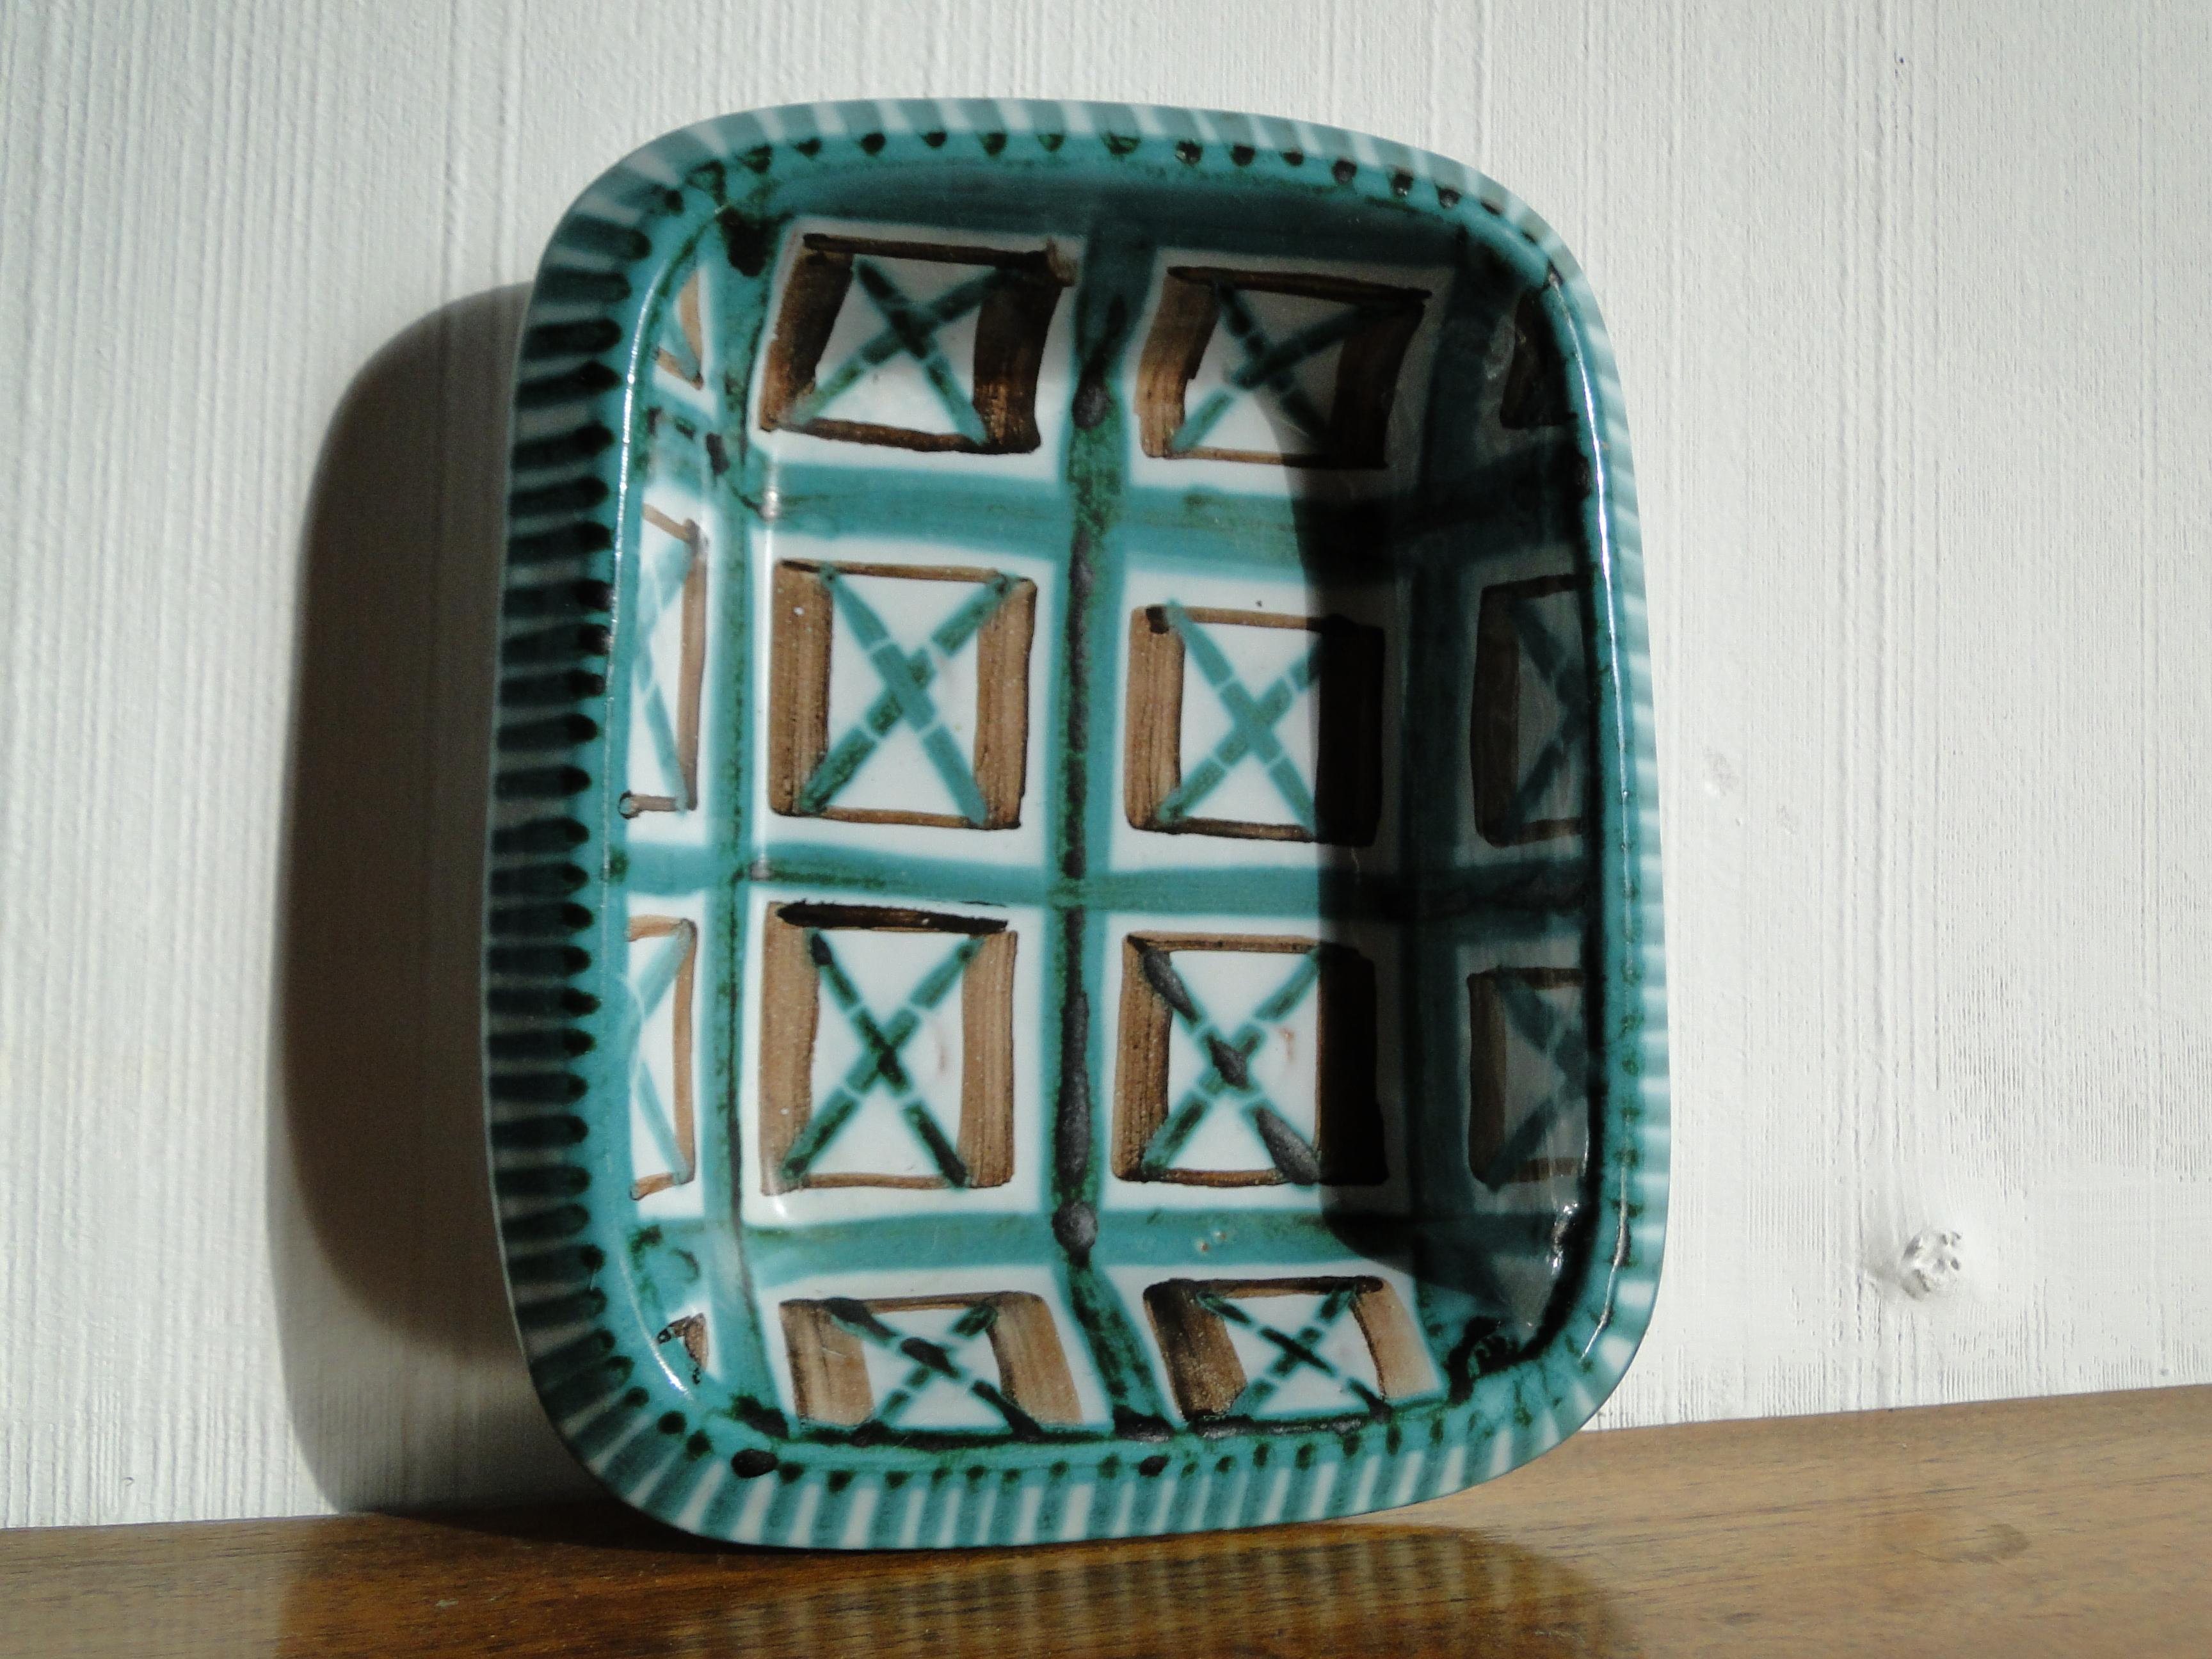 Robert Picault (1919 - 2000)
Französischer Keramiker in Vallauris

Robert Picault hat zur Wiederbelebung der kulinarischen Keramik beigetragen, indem er die traditionellen lokalen Formen, die mit Linien und geometrischen Mustern verziert sind,